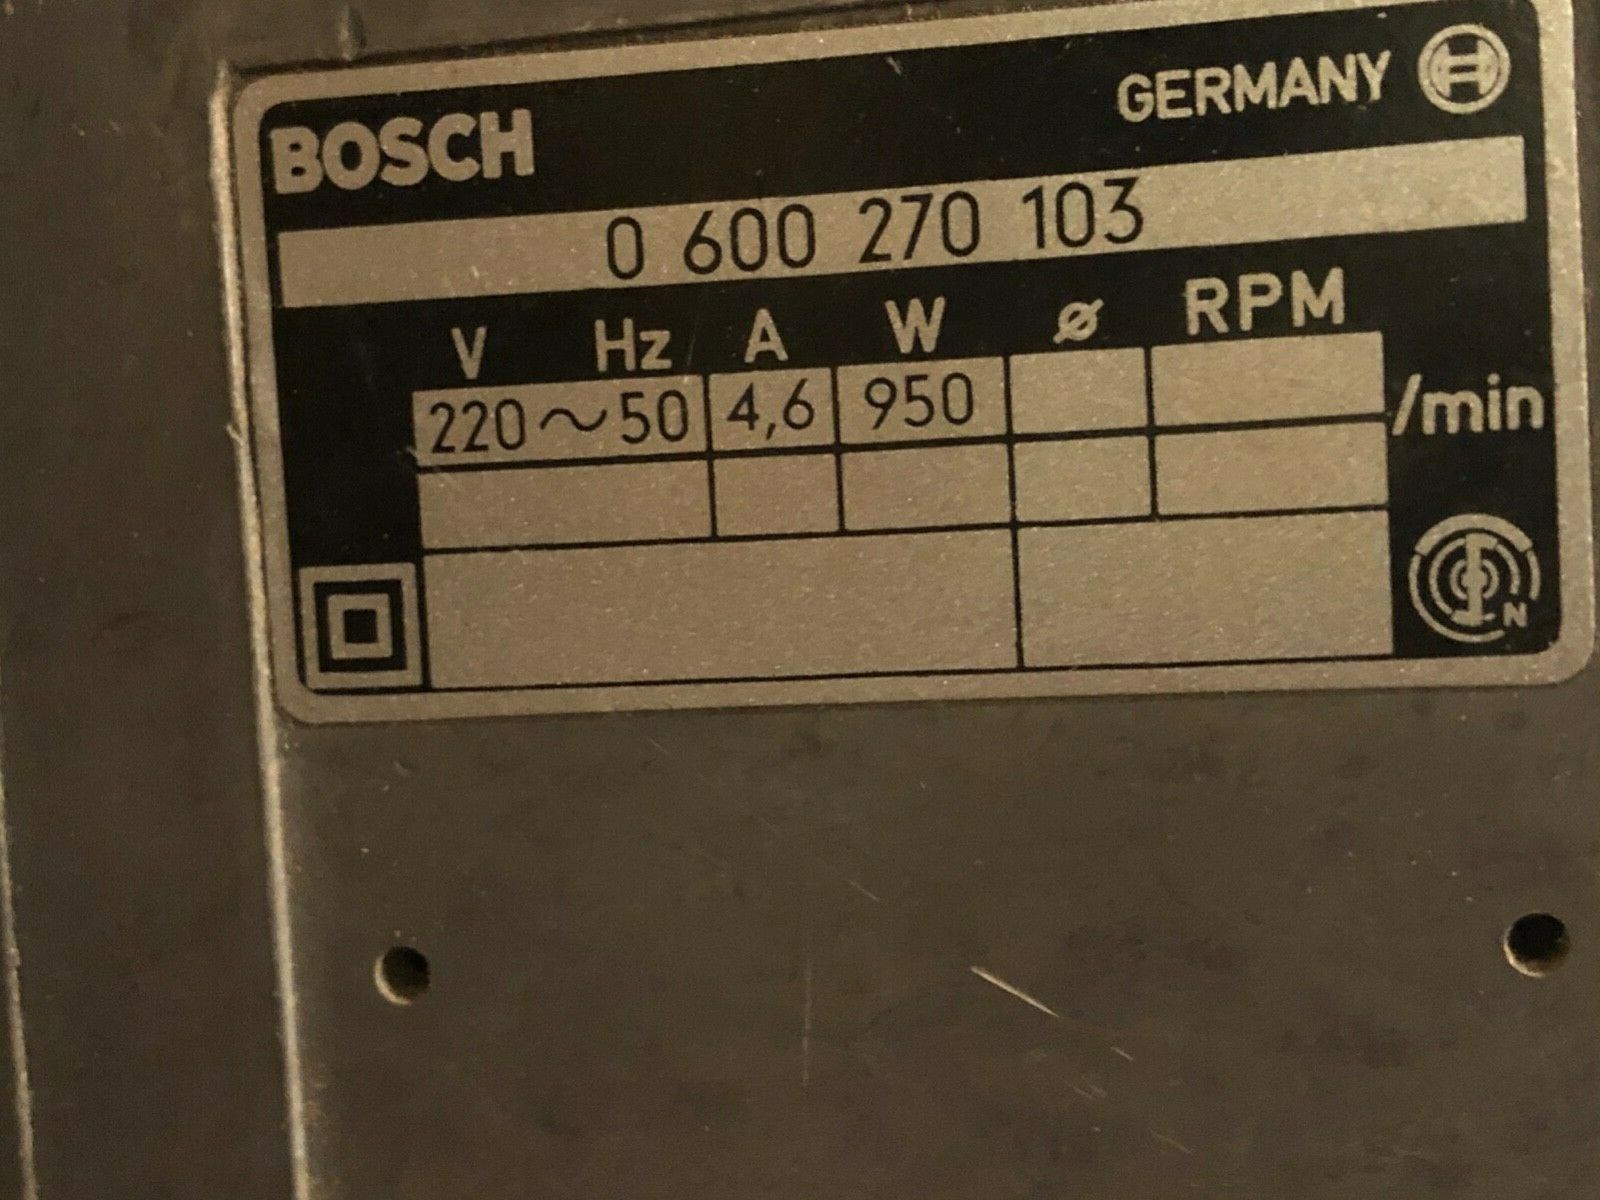 Gammel Bosch båndsliper 0600270103 - Bosch-Professional-Blau-Bandschleifer-GBS-0-600-_57.jpg - Johnpd